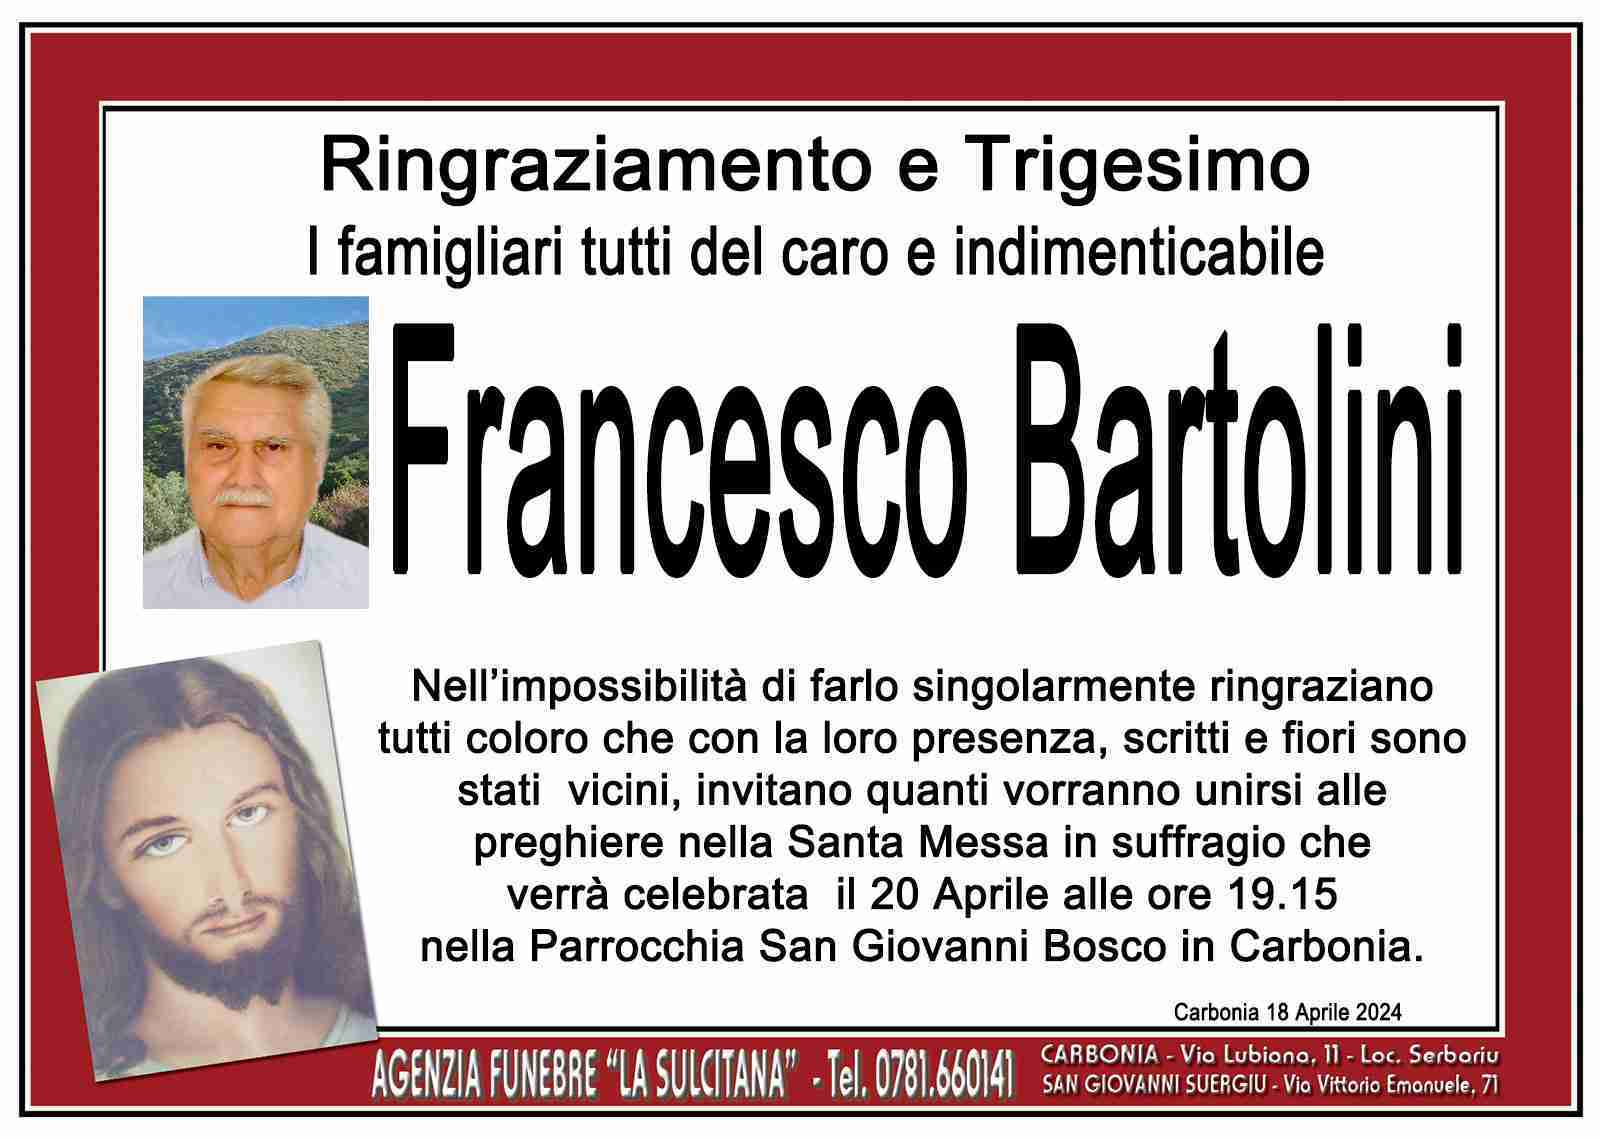 Francesco Bartolini